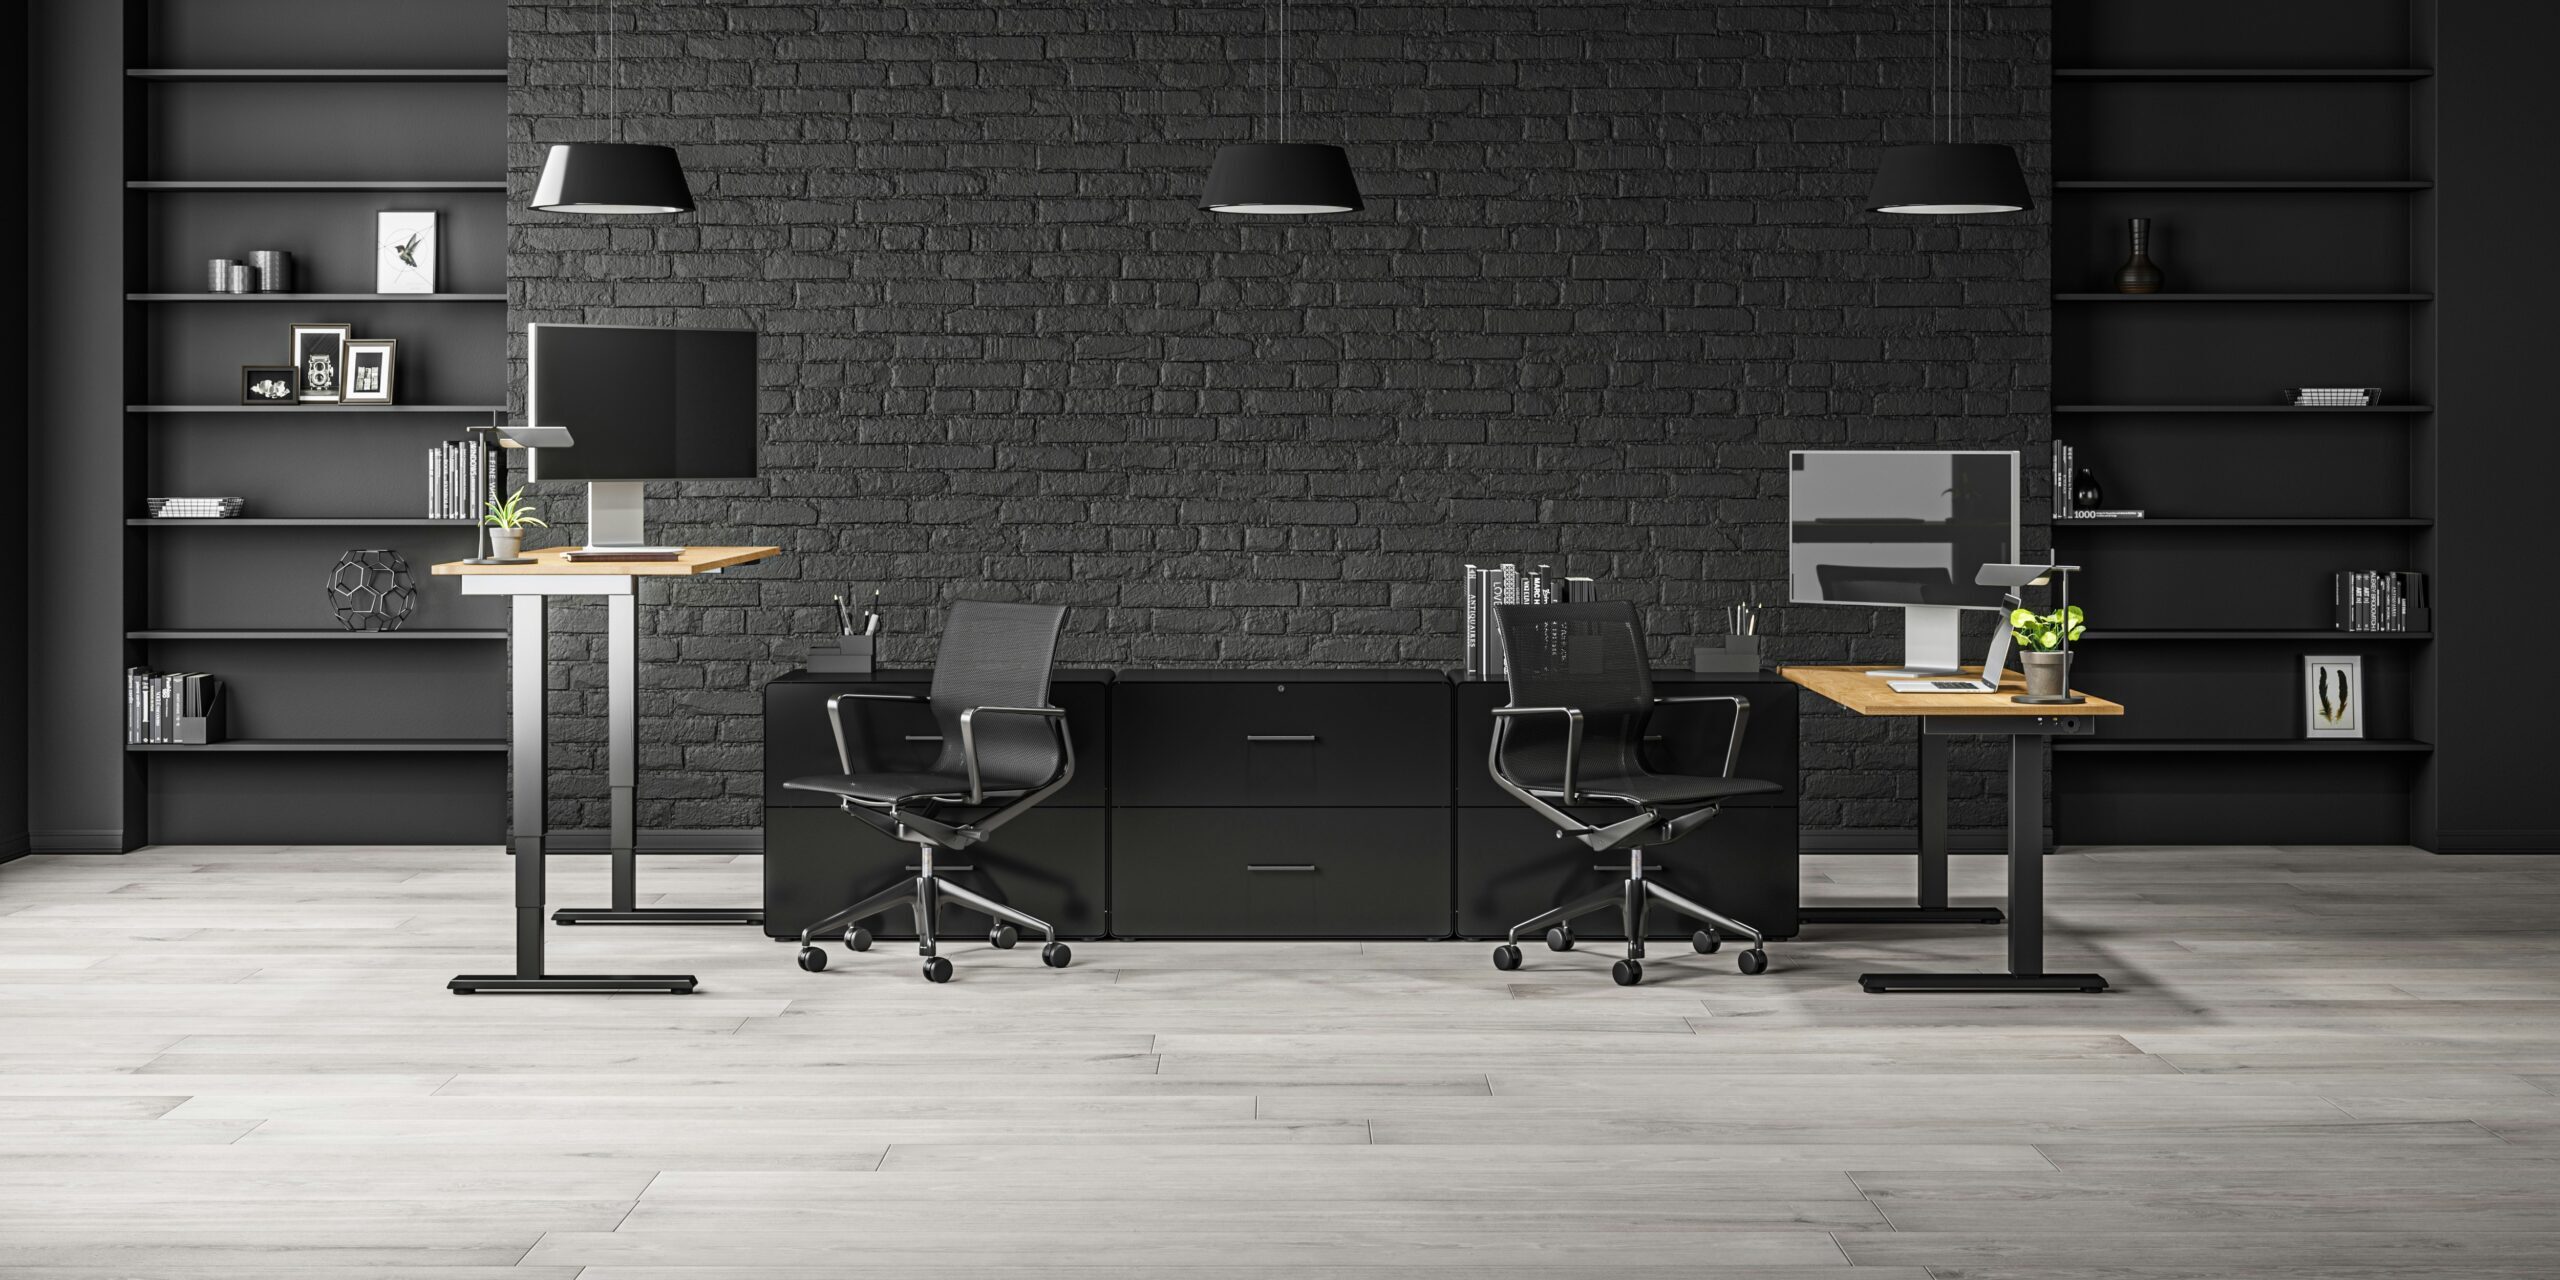 découvrez notre sélection de mobilier de bureau pour aménager votre espace professionnel avec style et fonctionnalité.